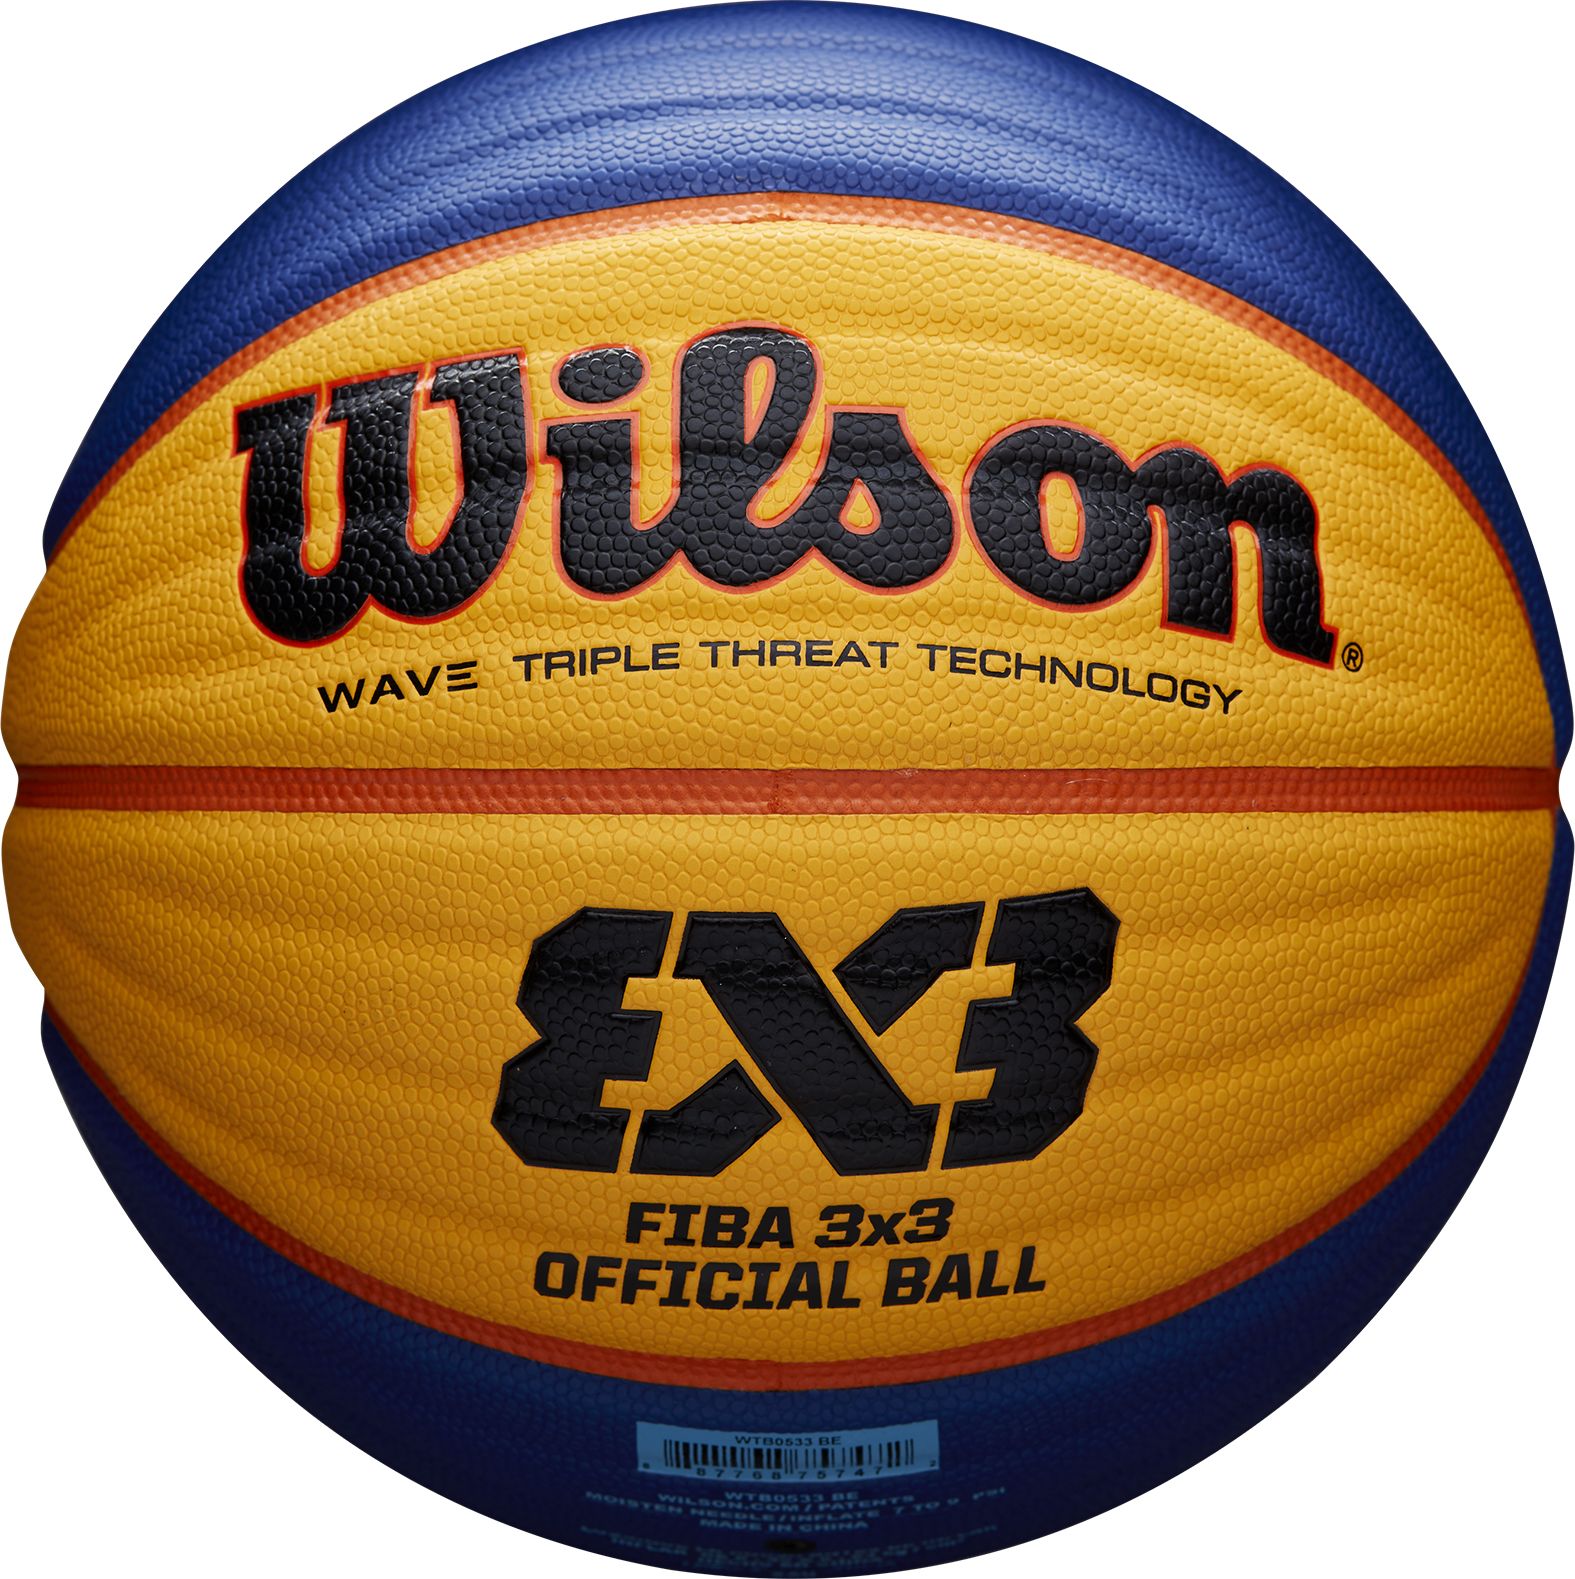 WILSON, FIBA 3X3 GAME BASKETBALL